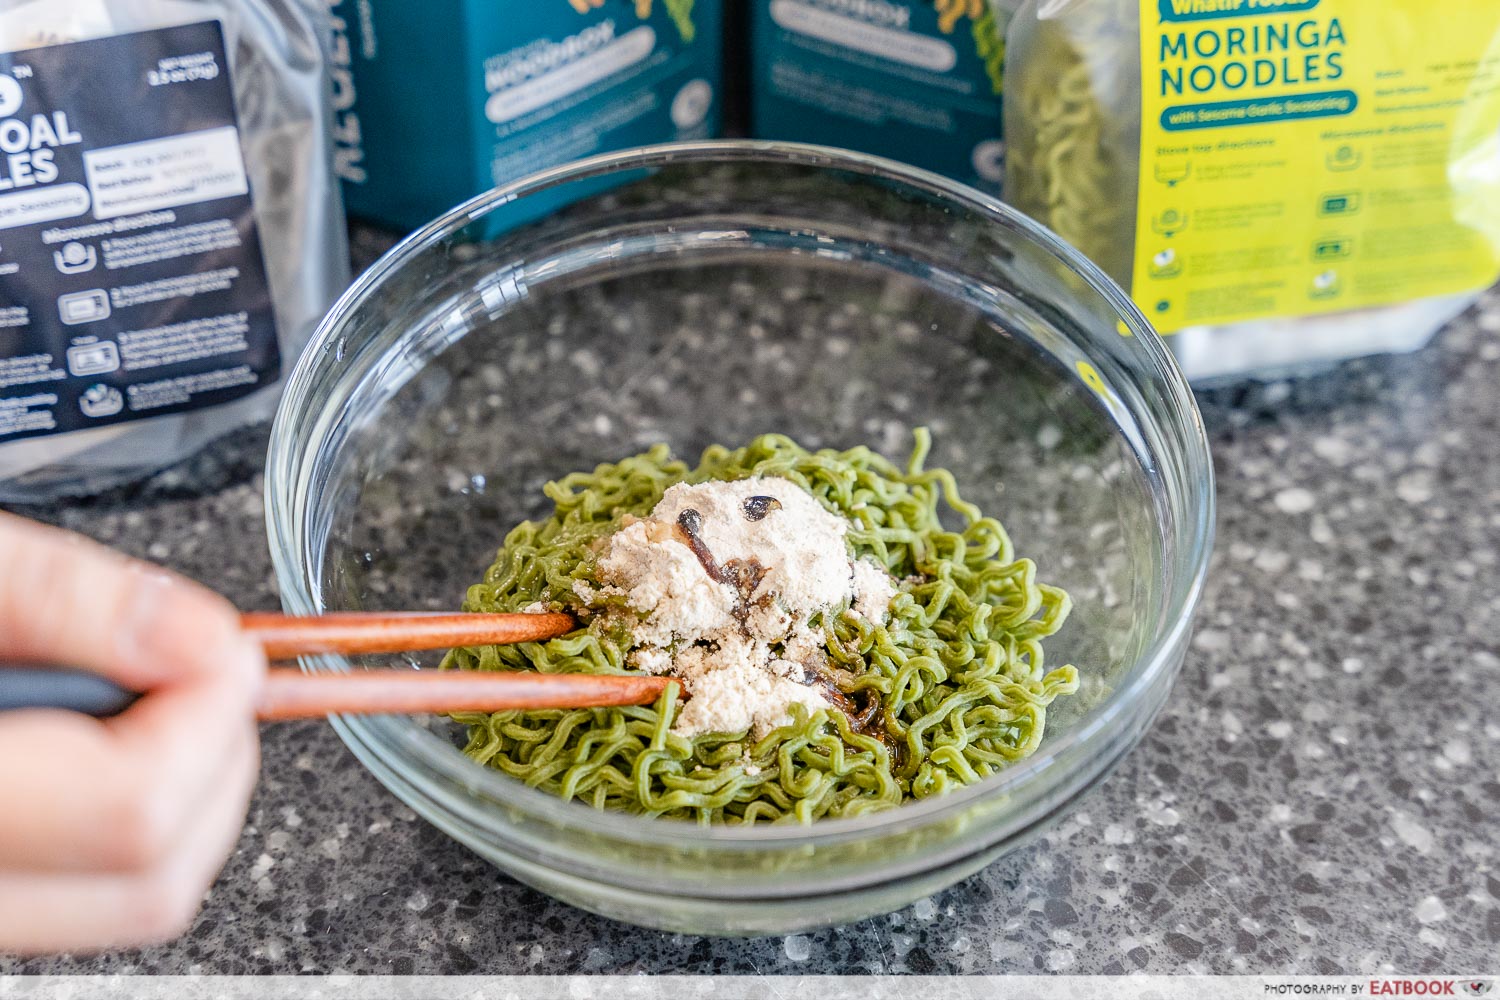 whatif foods - moringa noodles mixing